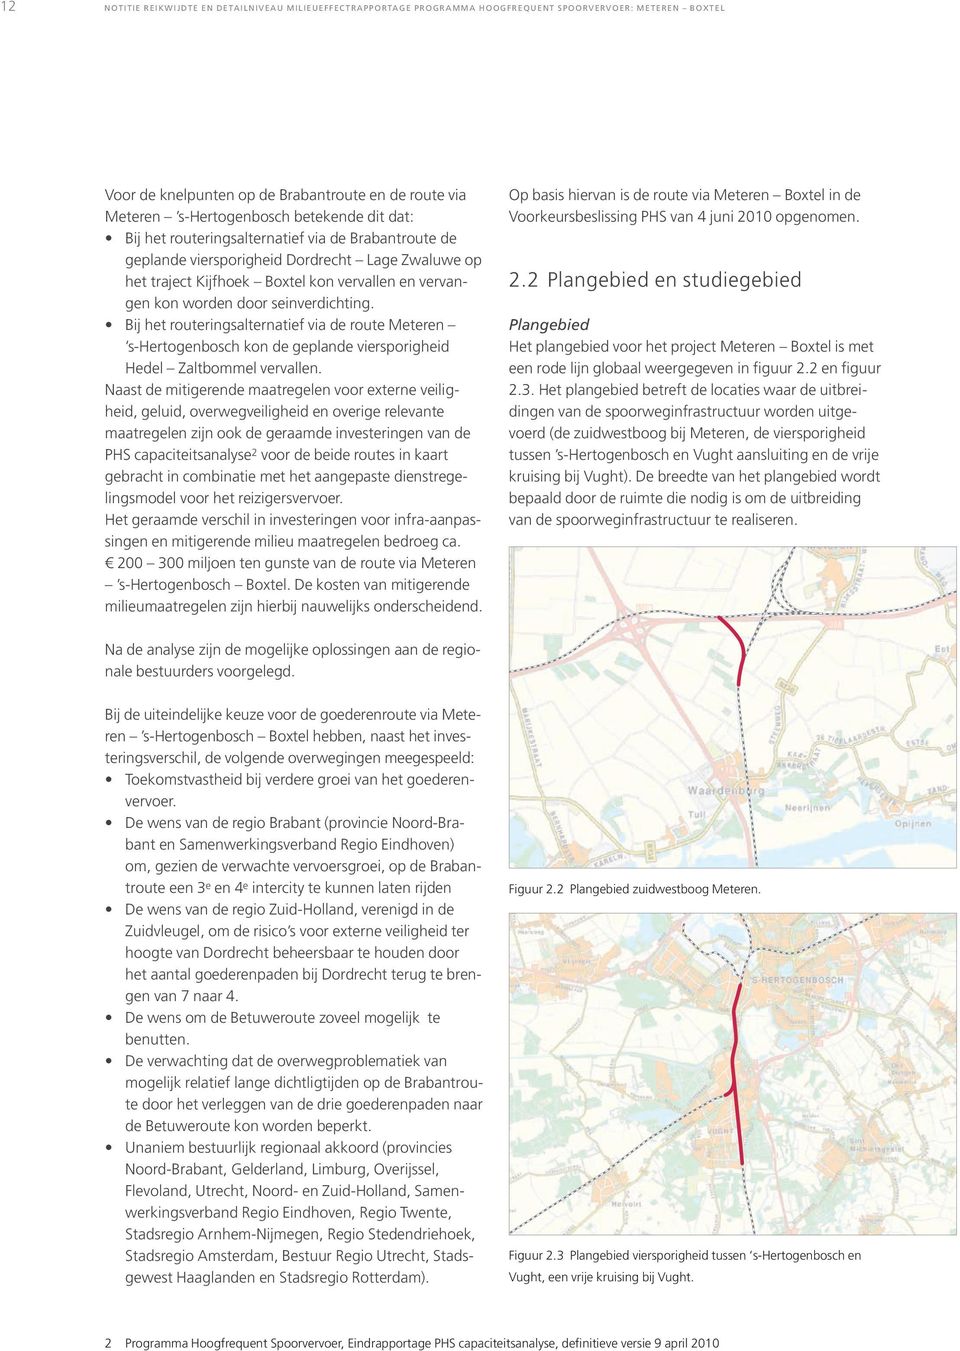 seinverdichting. Bij het routeringsalternatief via de route Meteren s-hertogenbosch kon de geplande viersporigheid Hedel Zaltbommel vervallen.